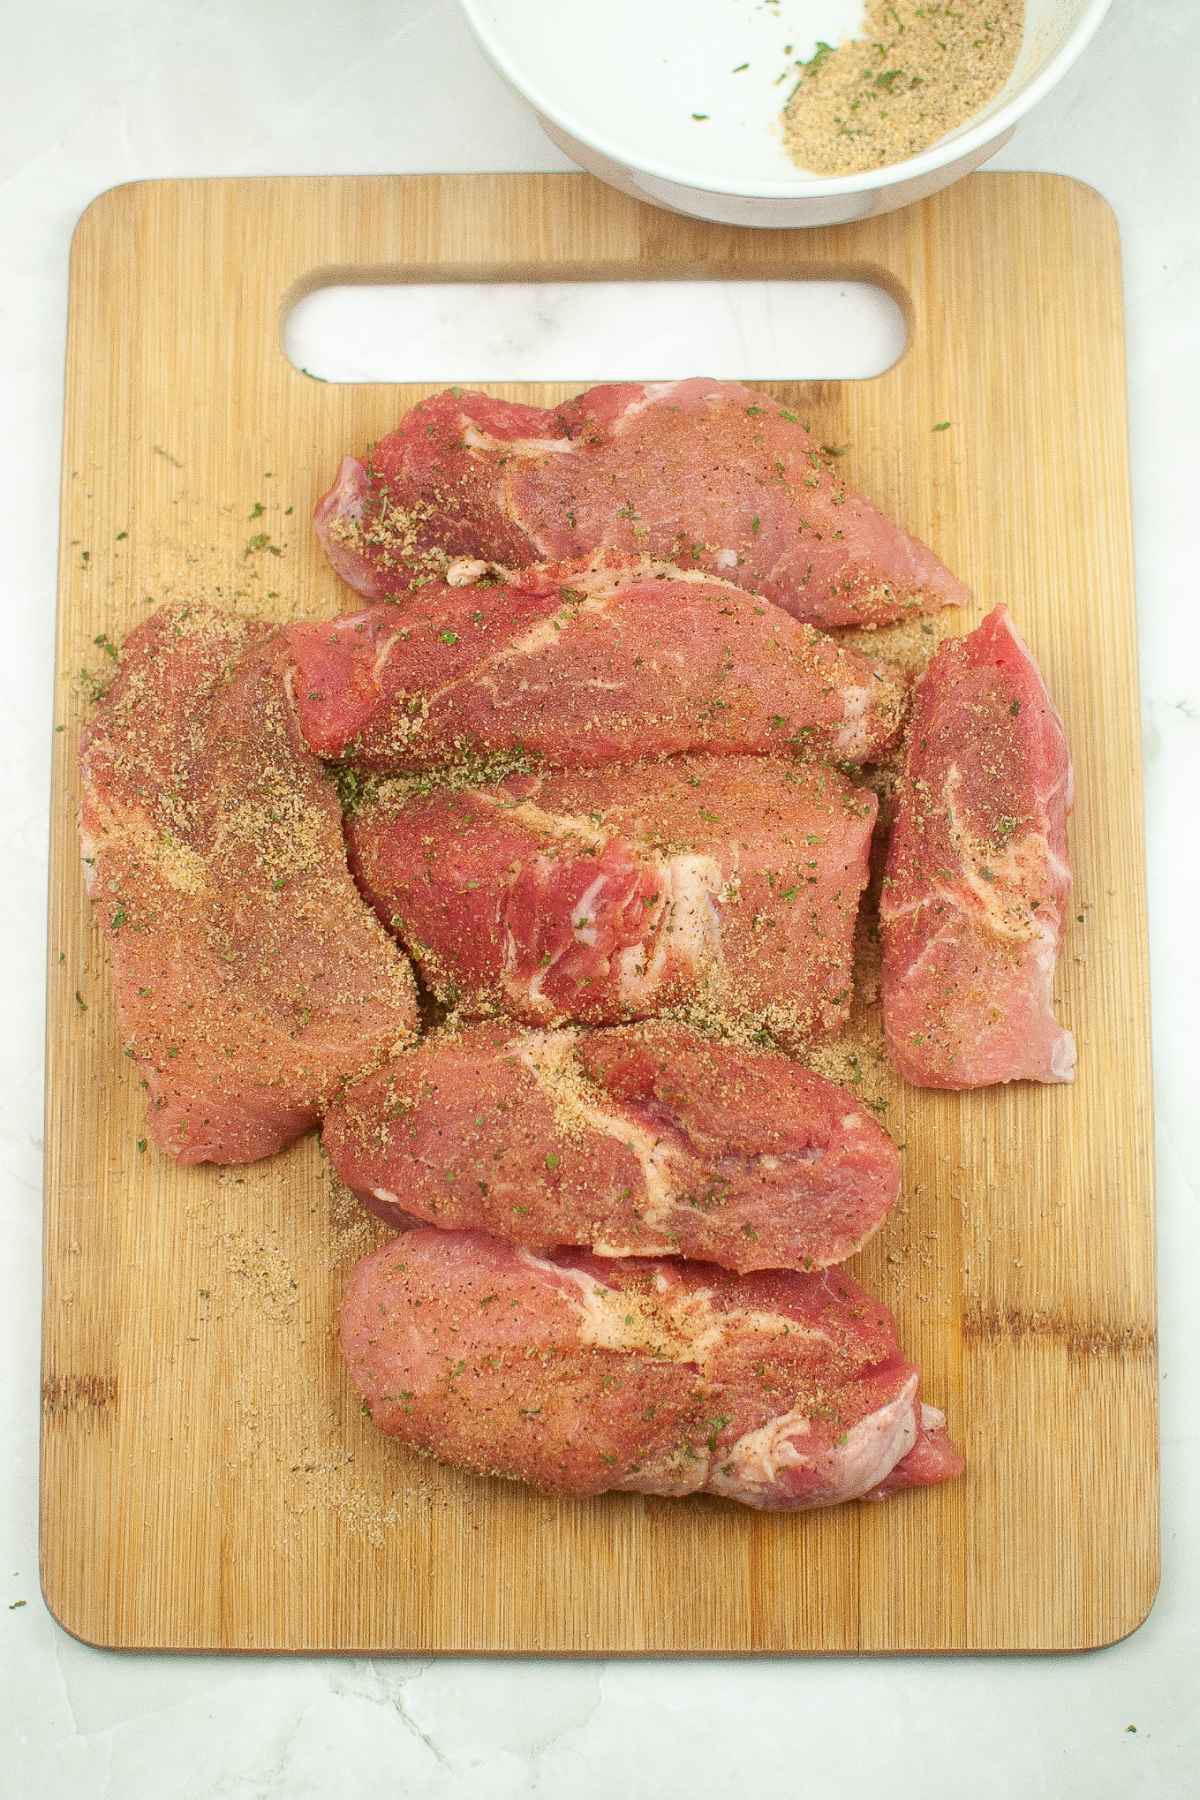 Seasoned meat on a cutting board.